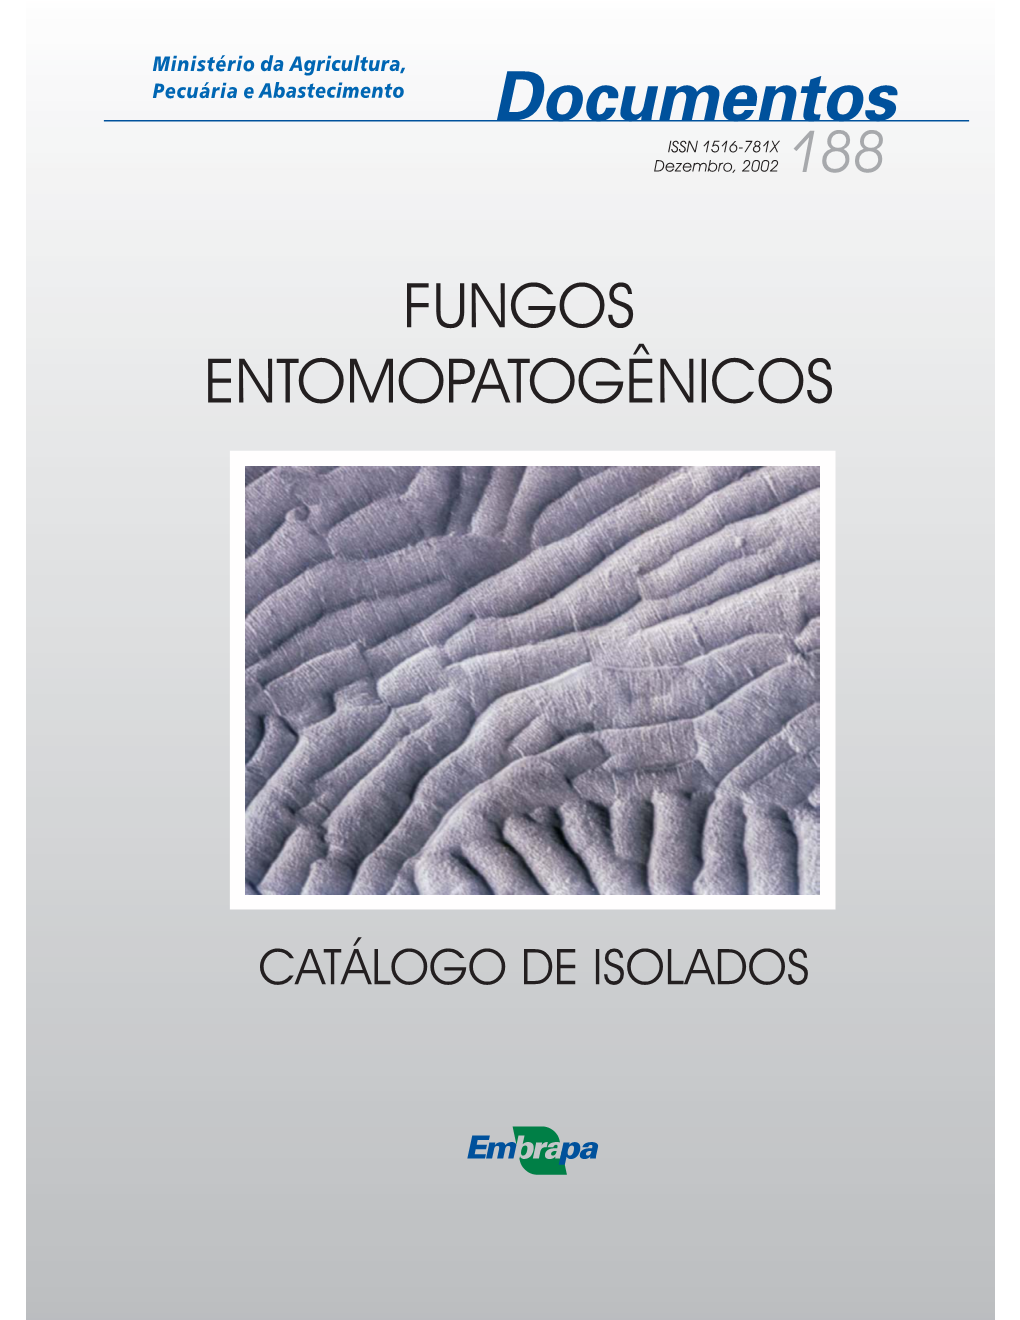 Fungos Entomopatogênicos